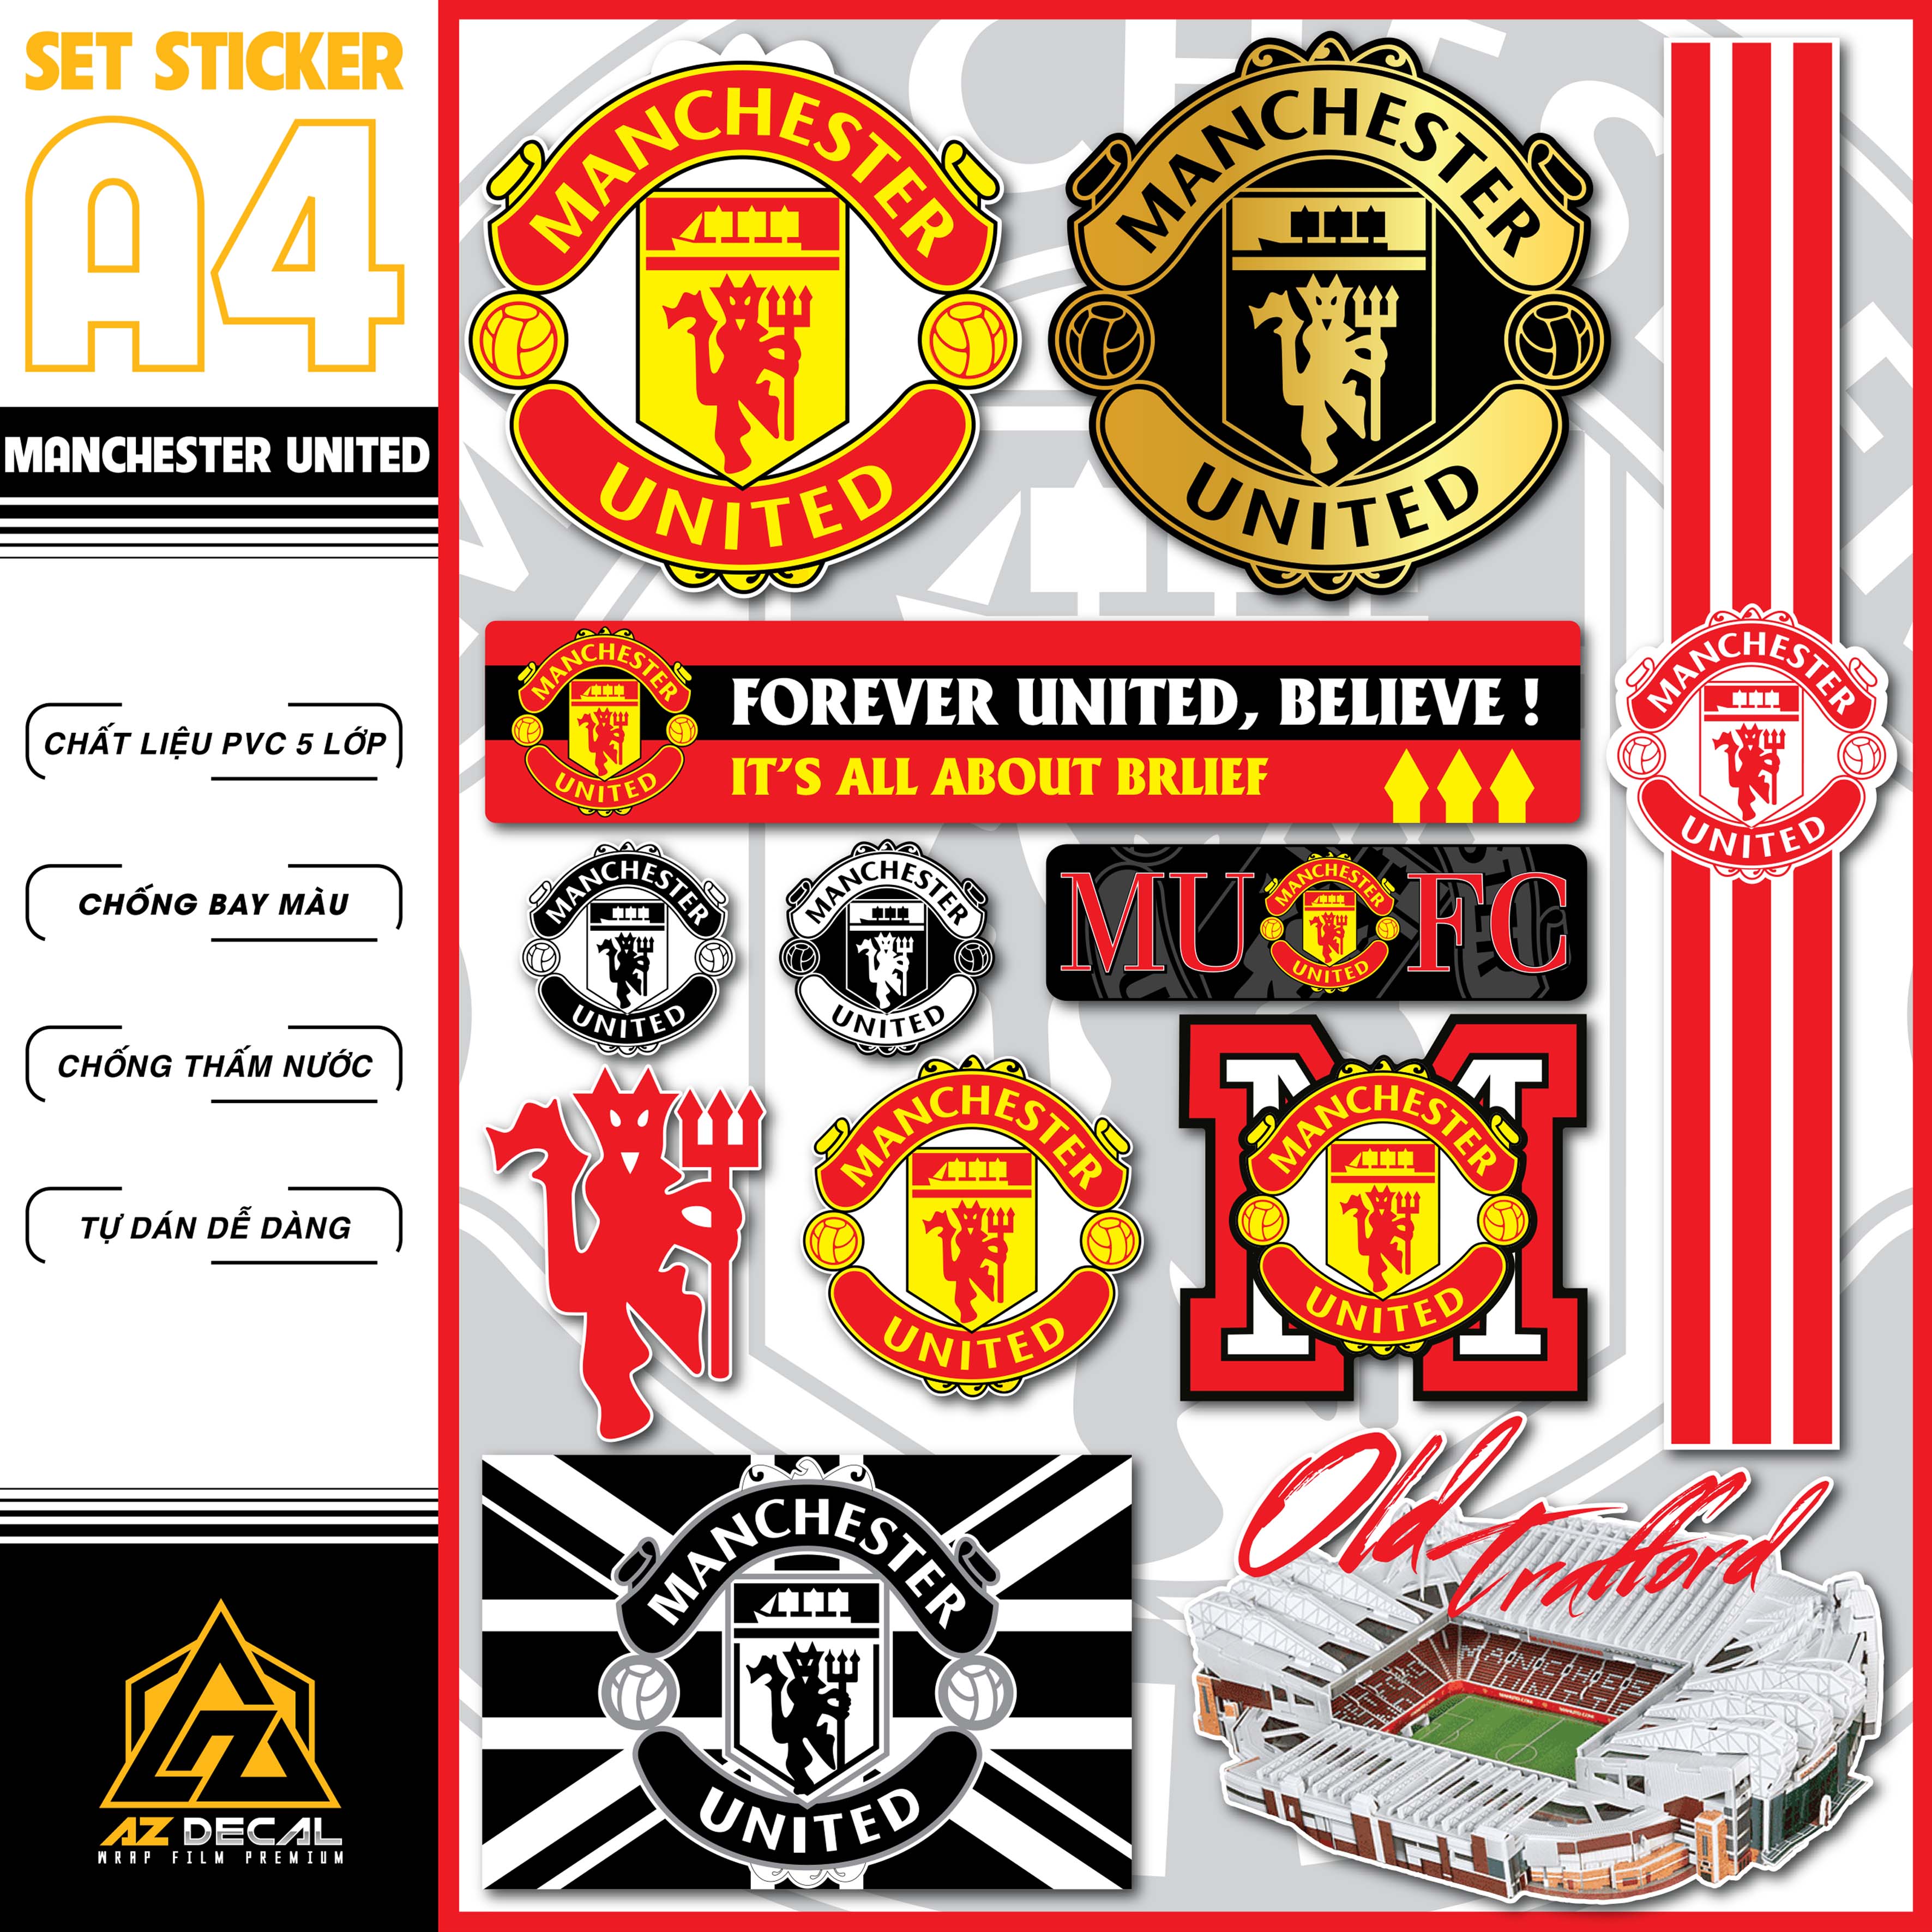 Sticker Bóng Đá Manchester United Dán Tem Xe, Dán Nón, Điện Thoại, Laptop